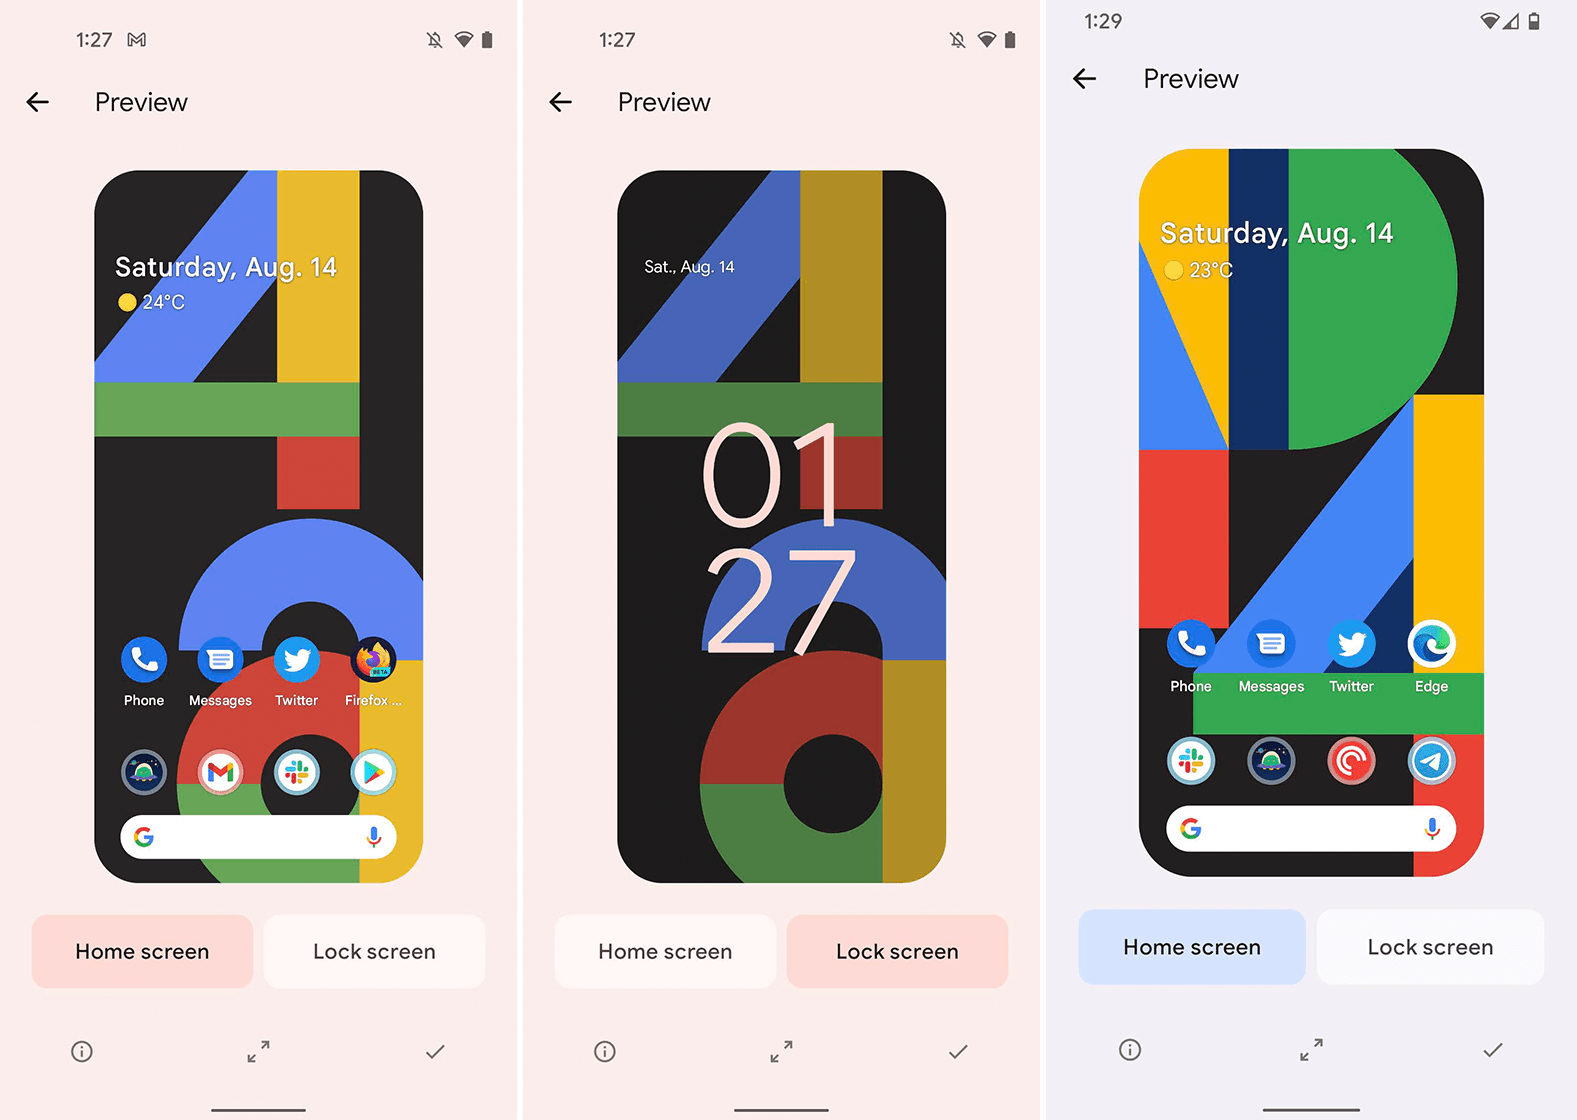 Google Pixel 4 Wallpapers